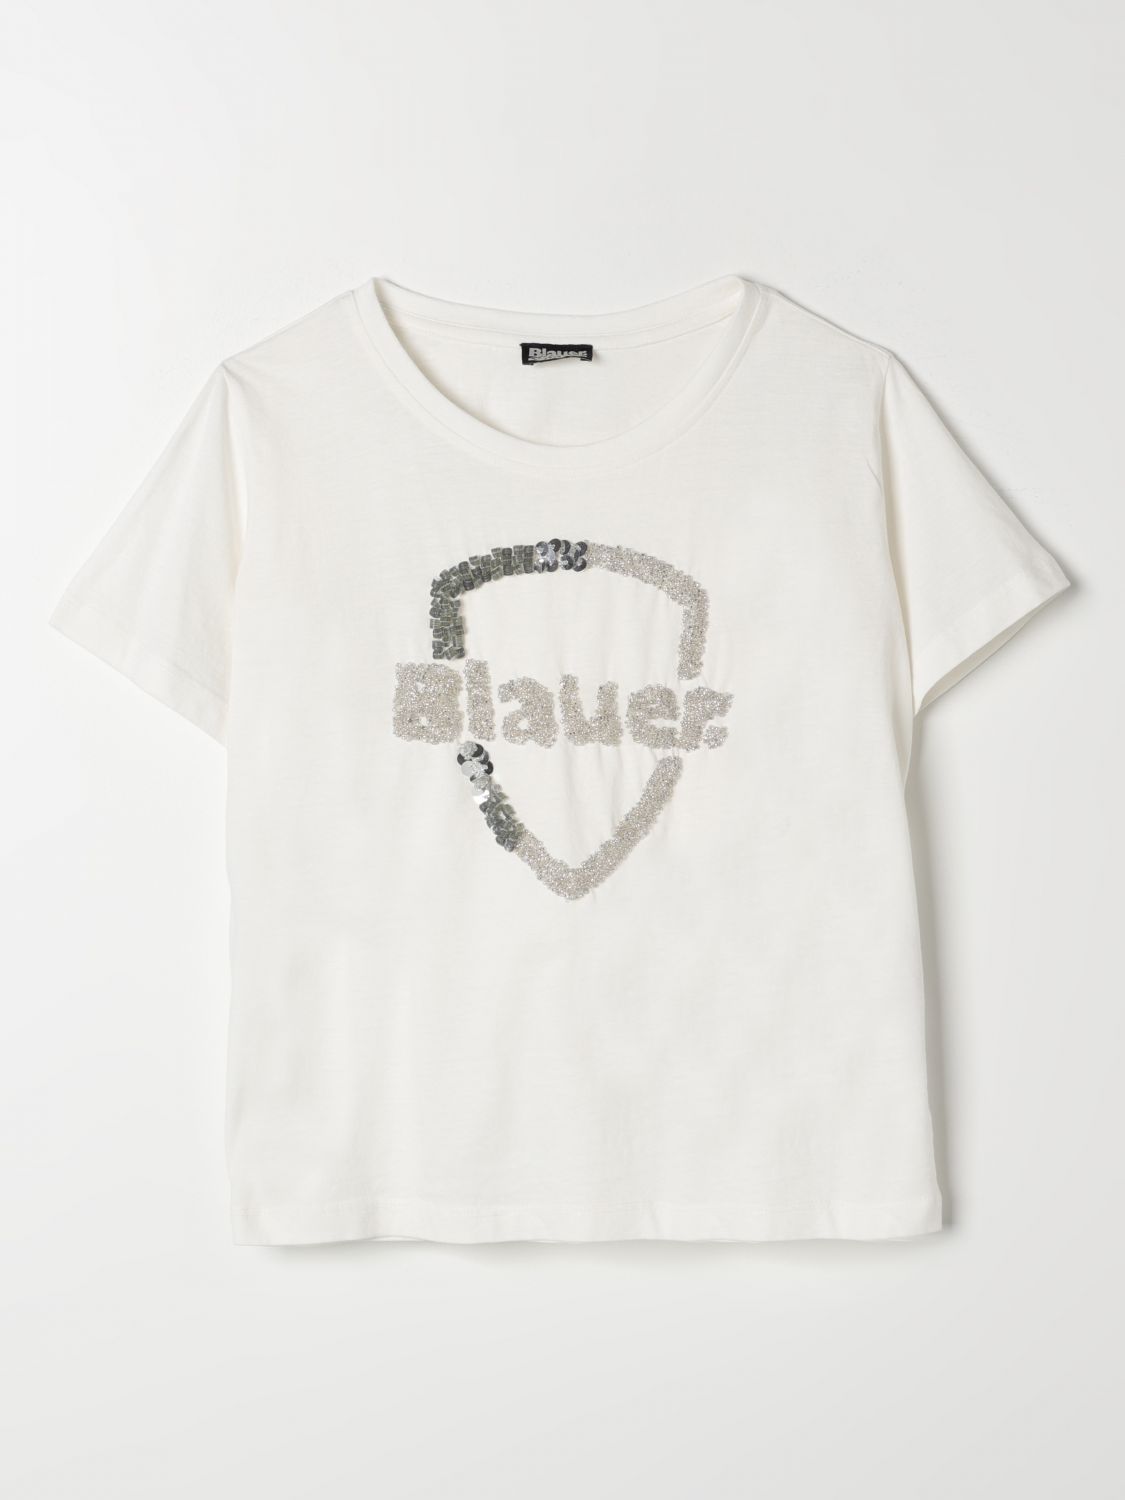 Shop Blauer T-shirt  Kids Color White